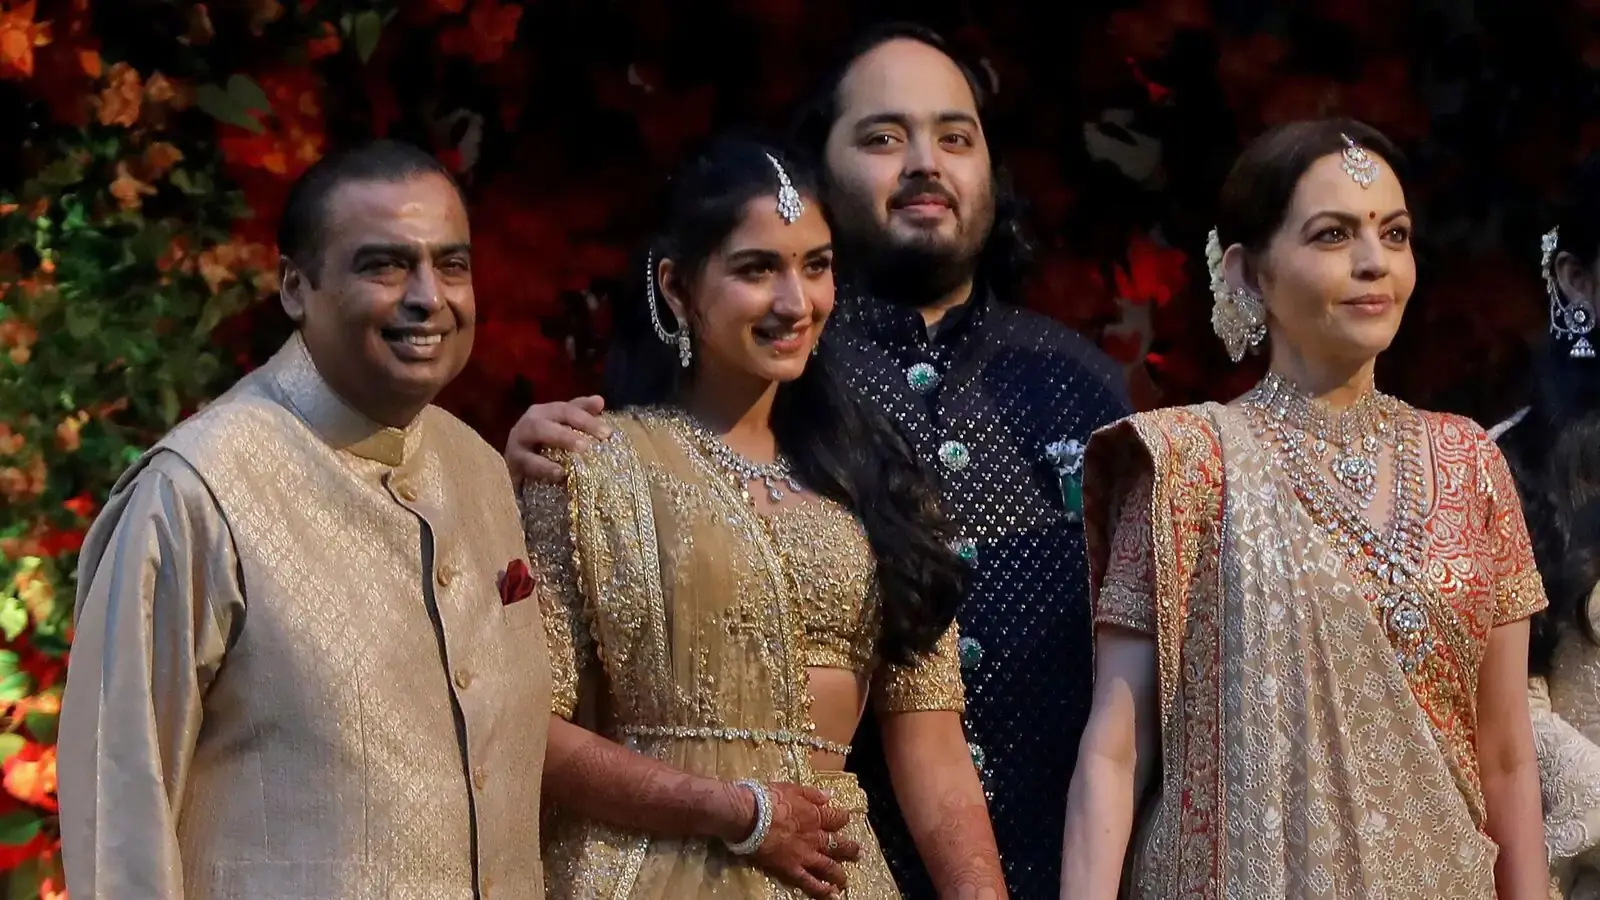 كم بلغت تكلفة حفل الزفاف الأسطوري الهندي في أيامه الأولى؟